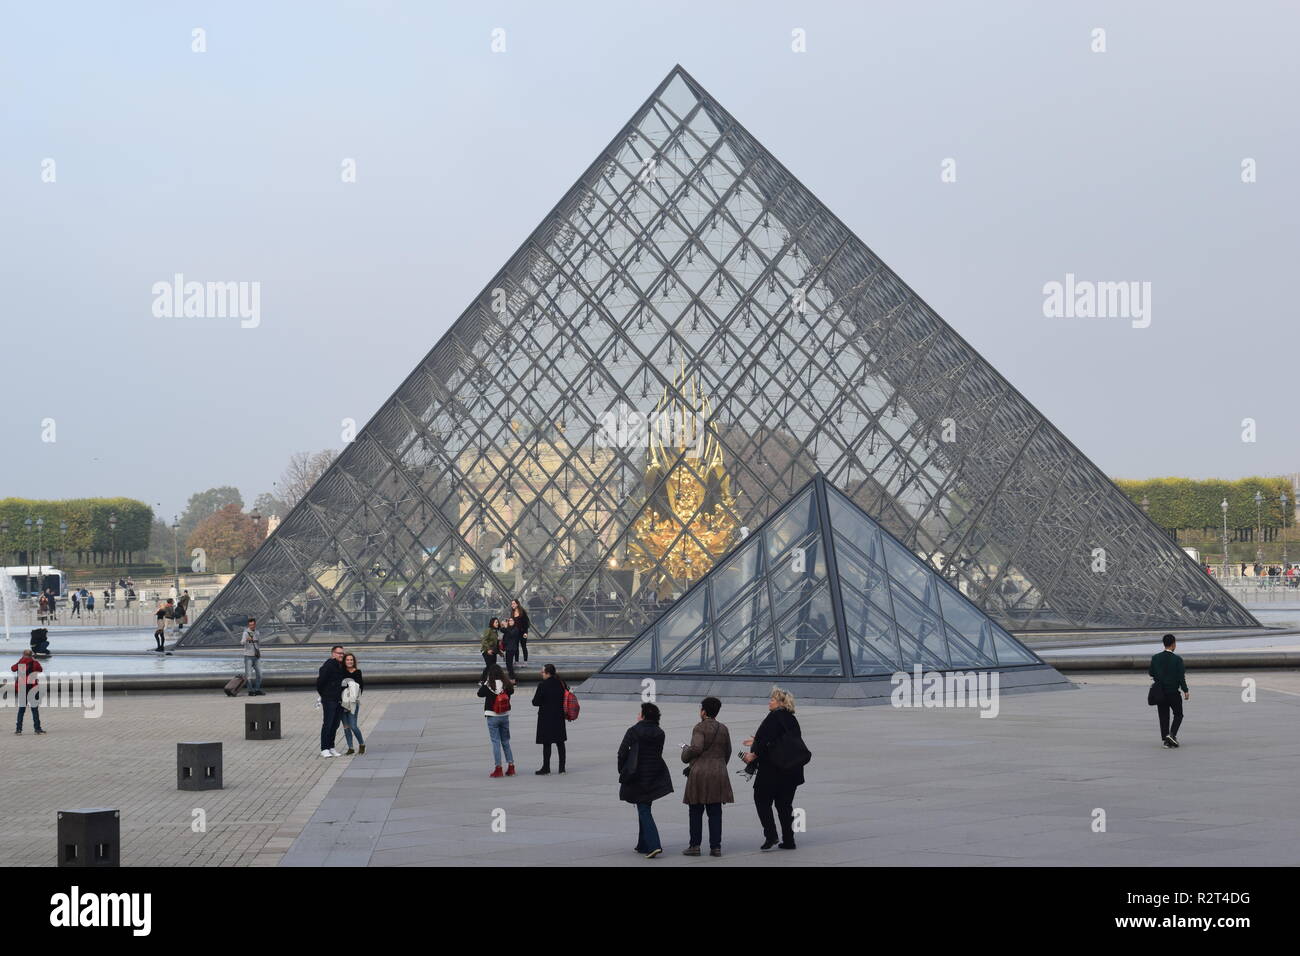 Los turistas delante de la pirámide de cristal del Louvre Museo Musée du Louvre en París, Francia, el más famoso por el Código Da Vinci. Foto de stock